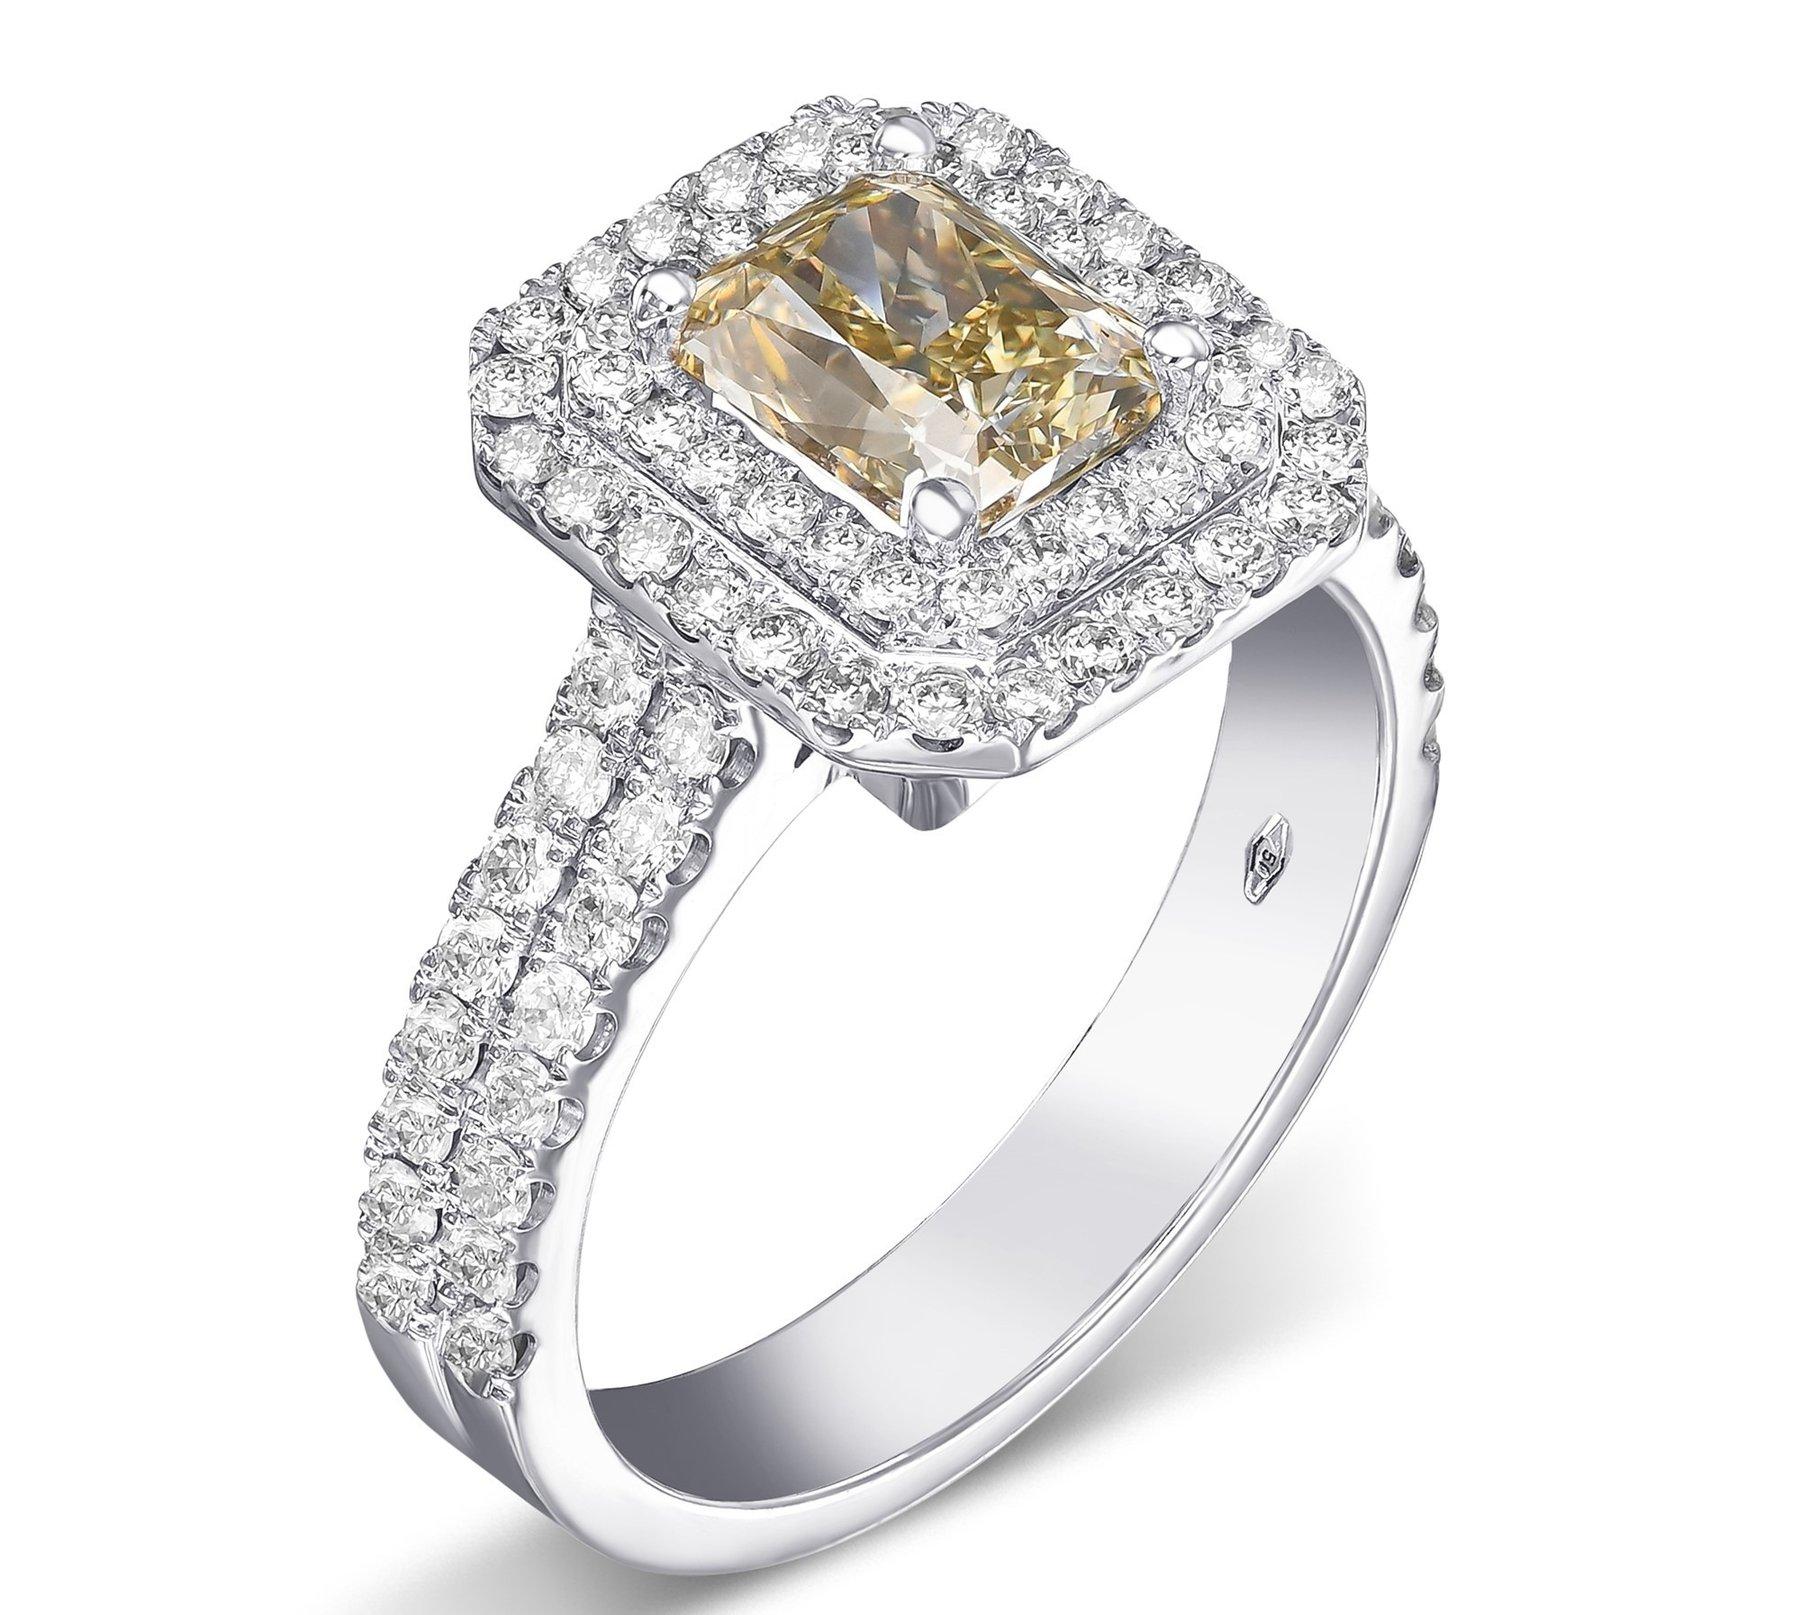 Heute bieten wir diese erstaunliche Ring mit einem Zentrum 1,50 Karat fancy bräunlich gelben Diamanten und 0,50 cttw Diamanten Halo-Ring. 
18 kt. Weißes Gold
Größe: 56 EU / 7.75 US
Gesamtgewicht: 7,28 g

Der Ring kann vor dem Versand kostenlos in